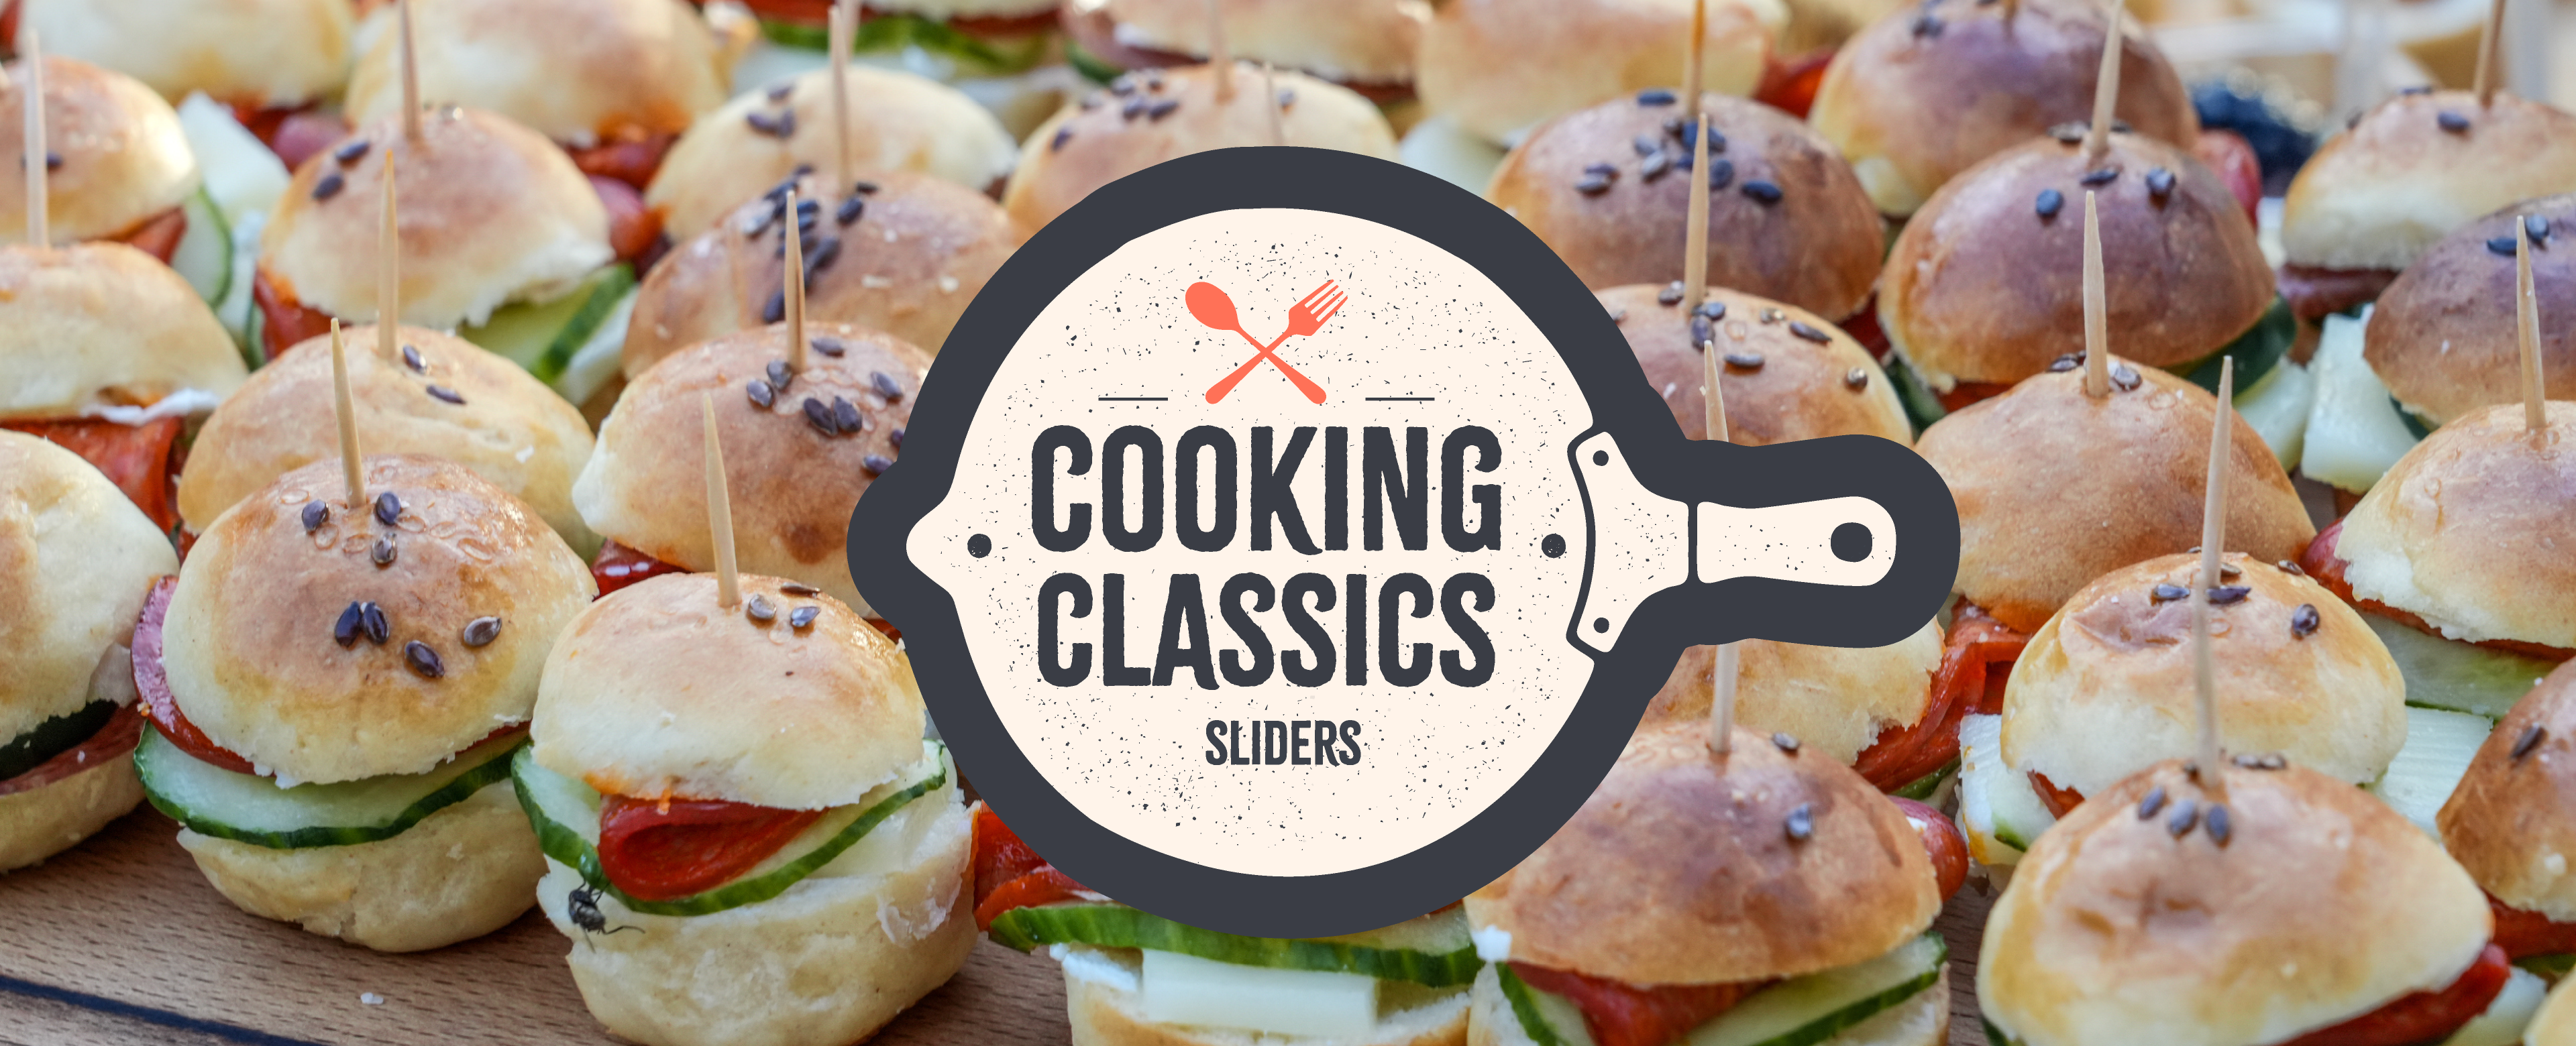 Cooking Classics: Sliders